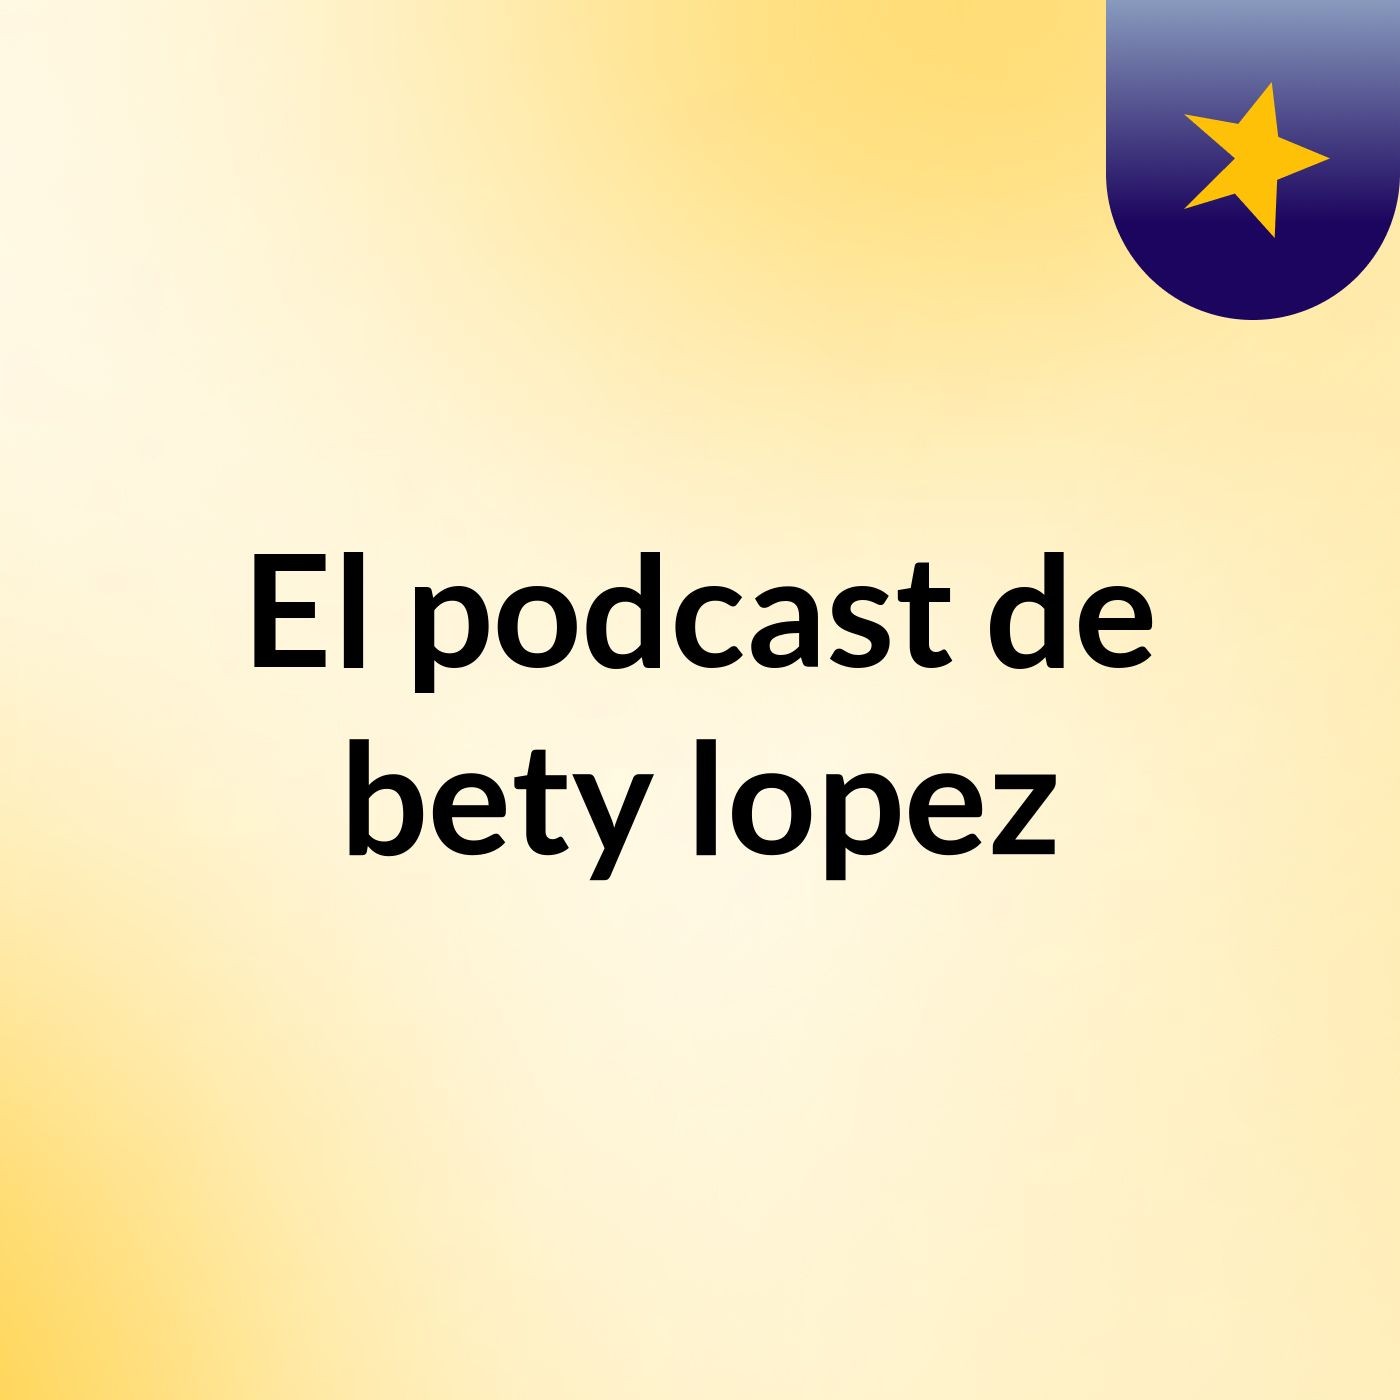 El podcast de bety lopez